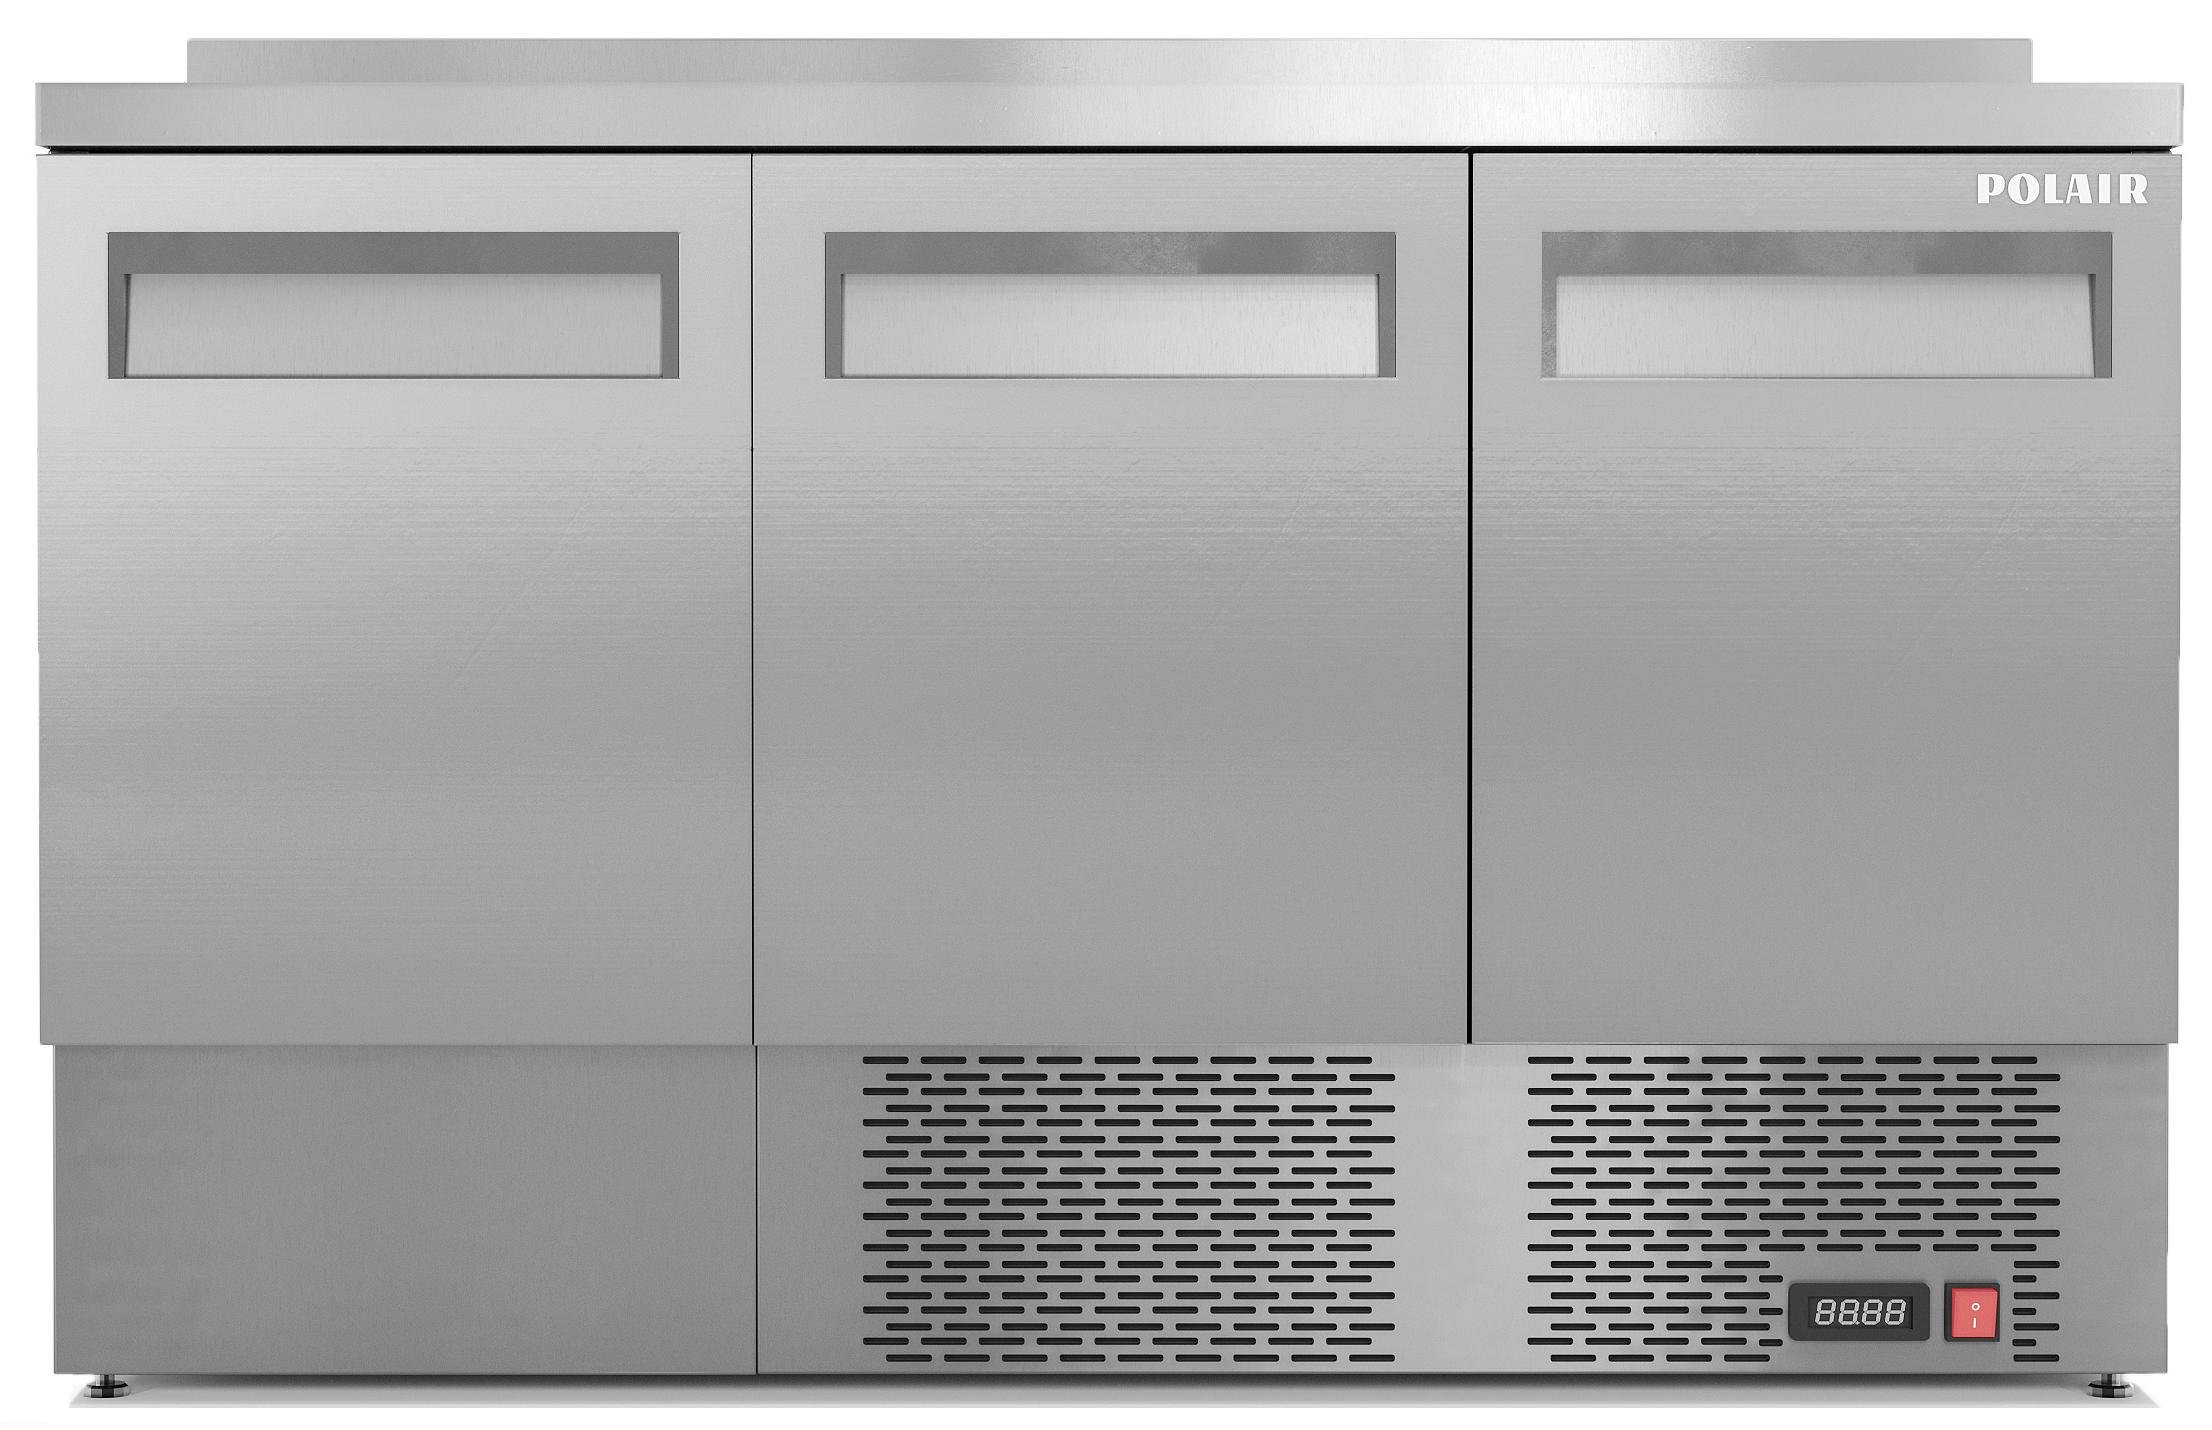 Стол холодильный среднетемпературный TMi3-GC (R290)